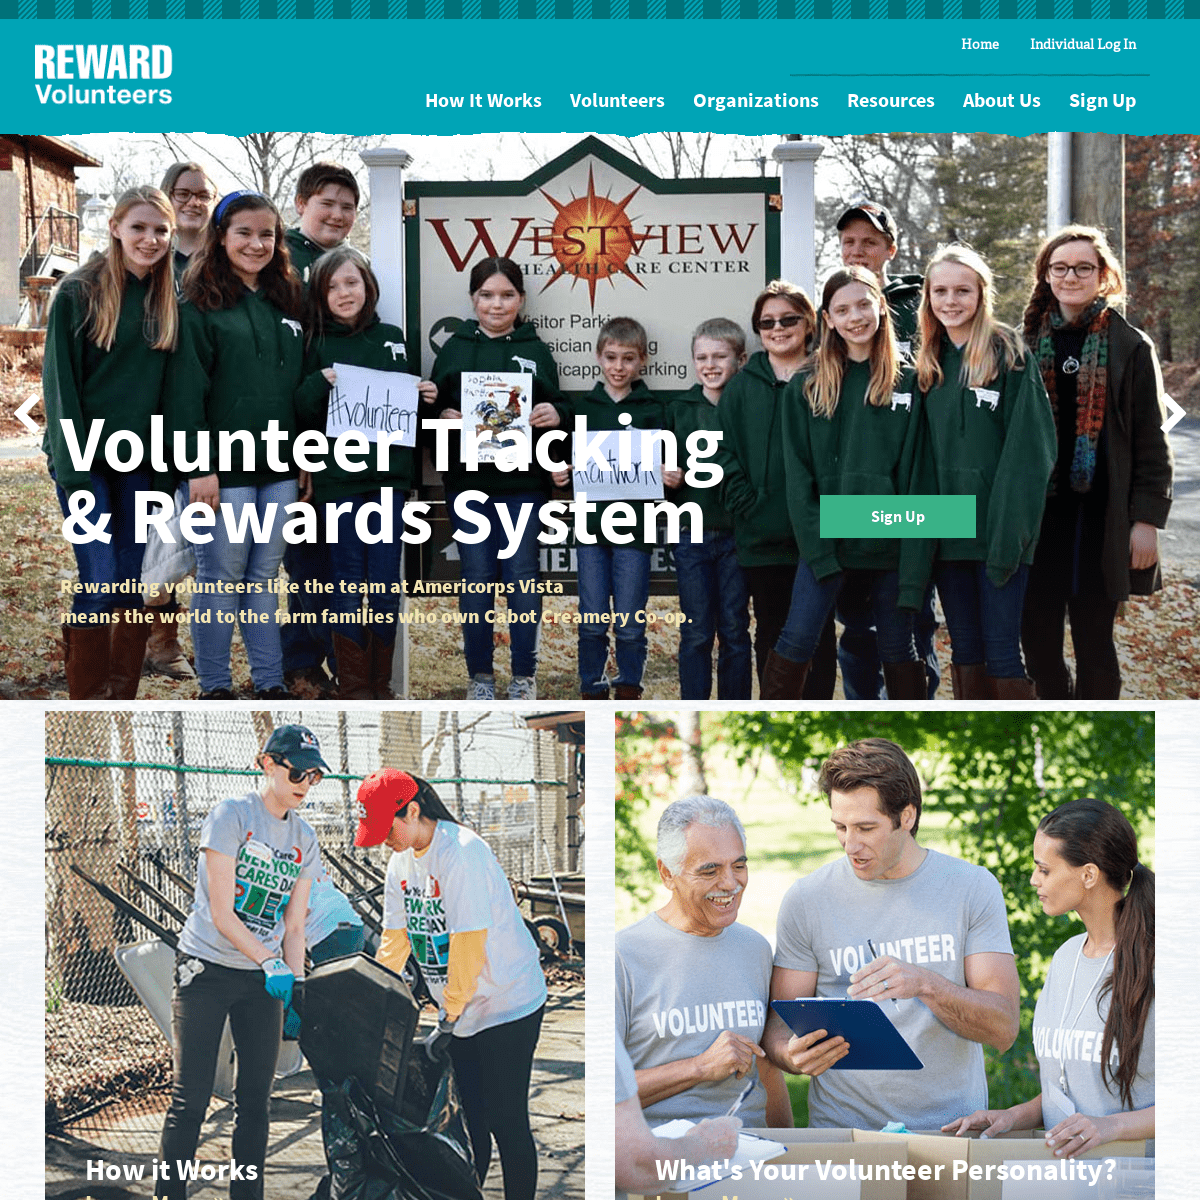 Volunteer Tracking & Rewards System | Reward Volunteers